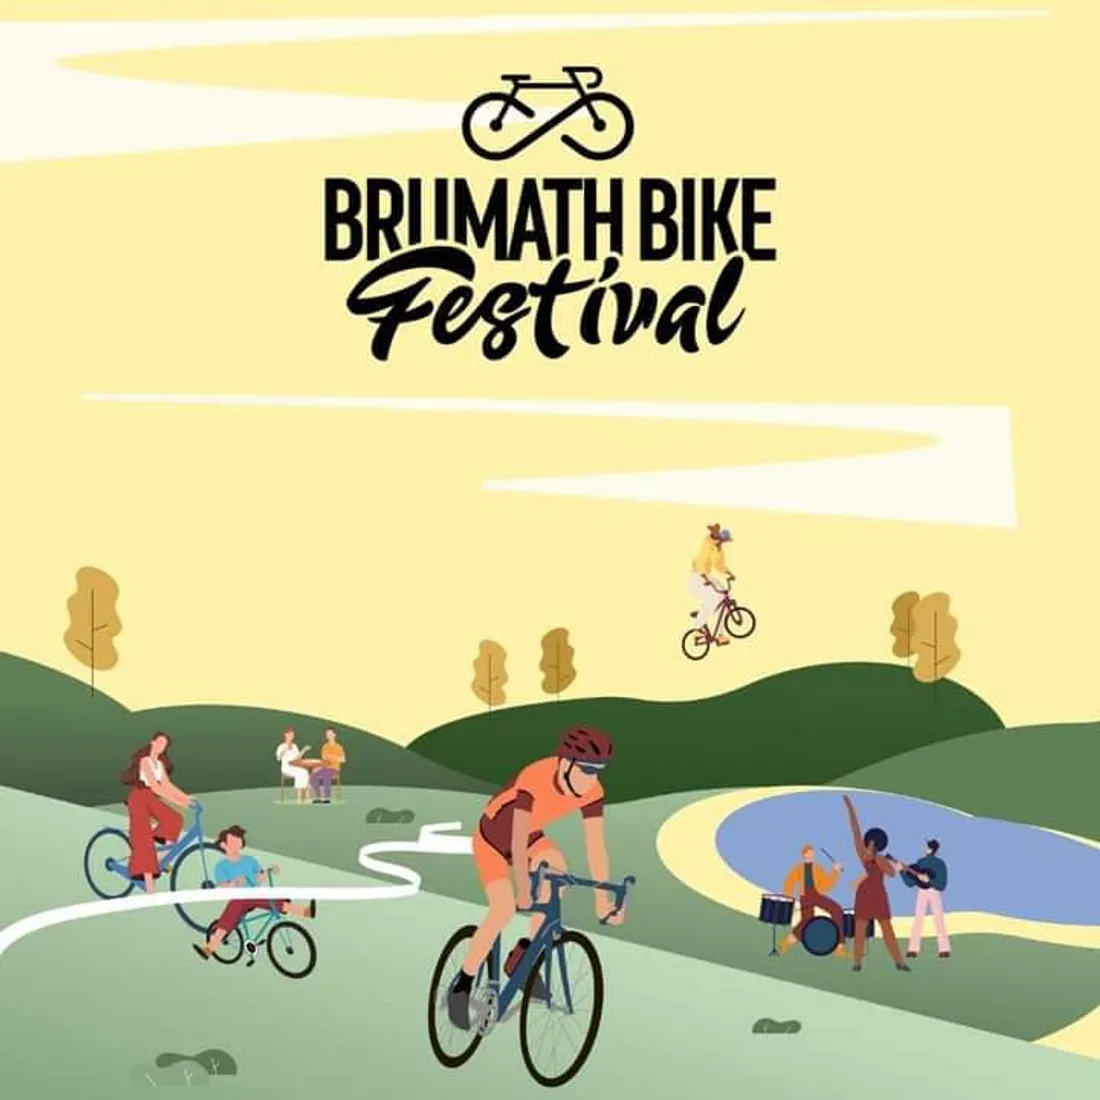 Festival bike de Brumath les 8 et 9 octobre